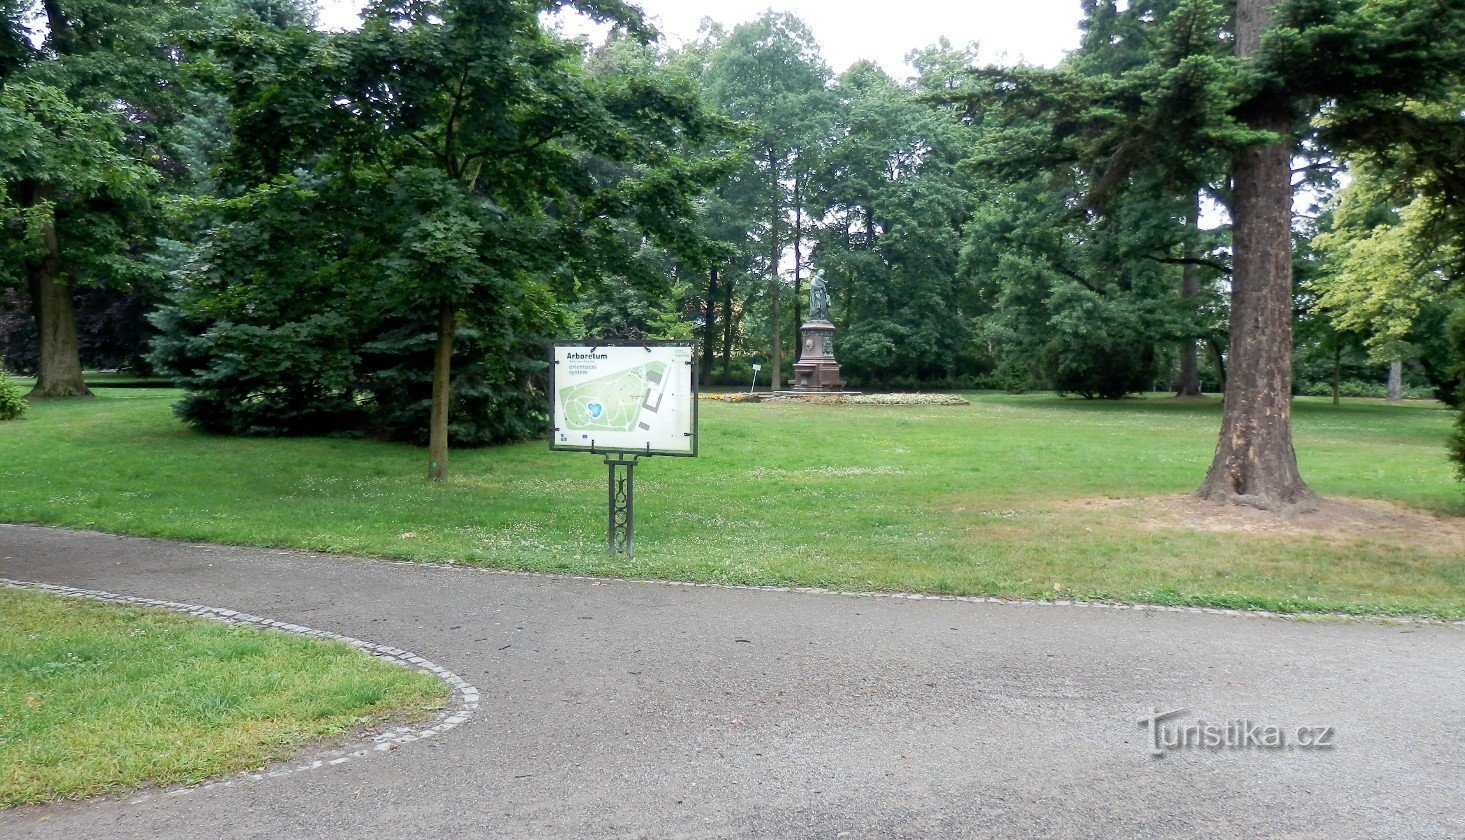 Tablero de orientación con la designación de árboles y arbustos plantados, al fondo la escultura de Mateřsk